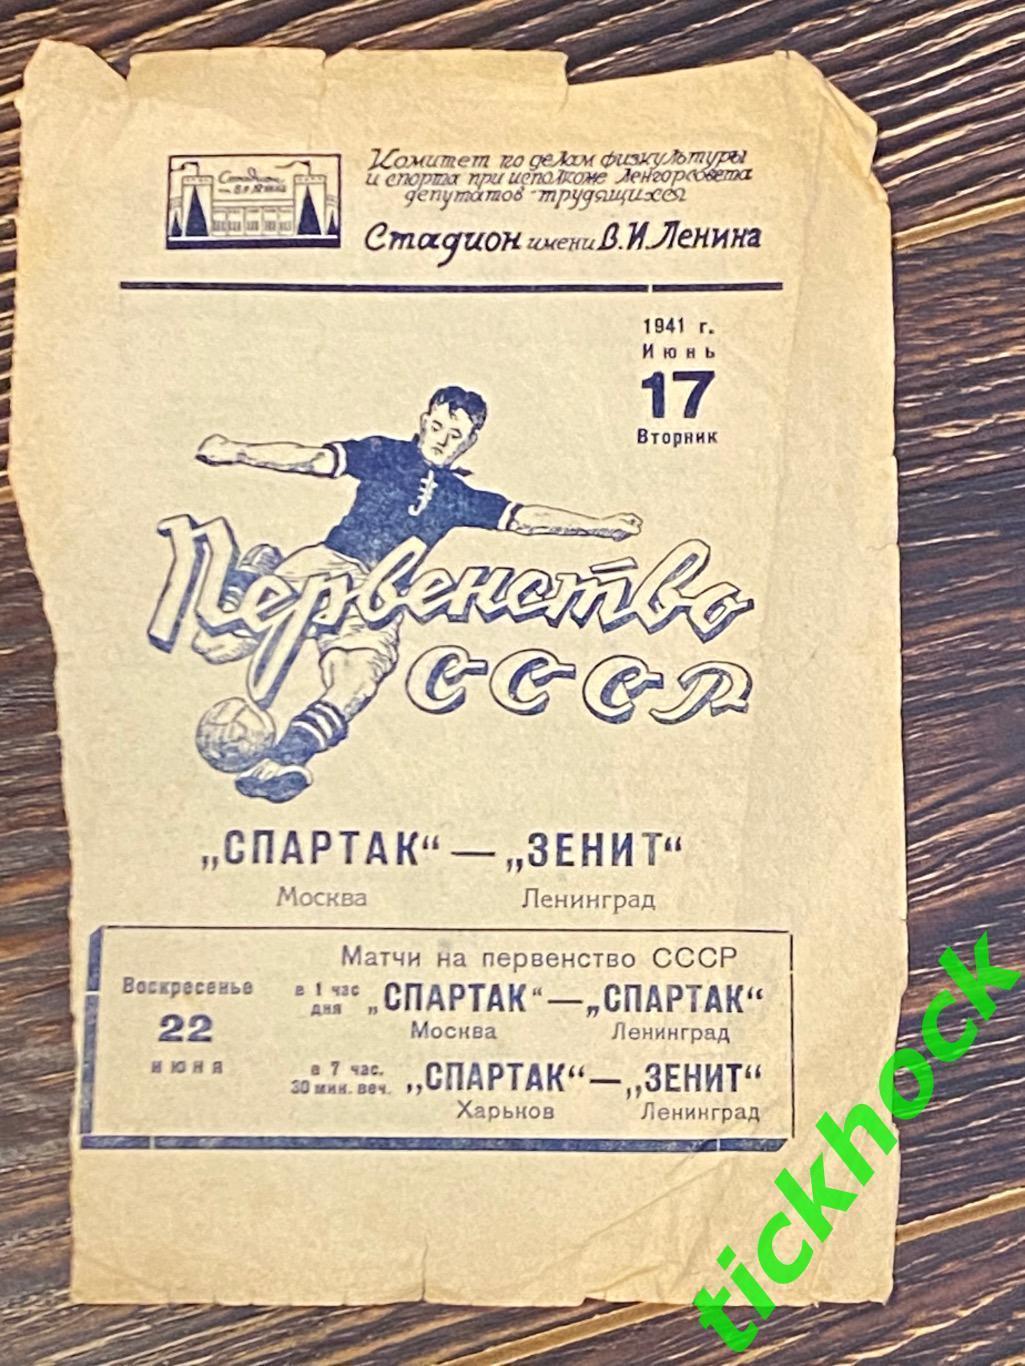 чемпионат СССР 1941 Зенит Ленинград - Спартак Москва 17.06.1941